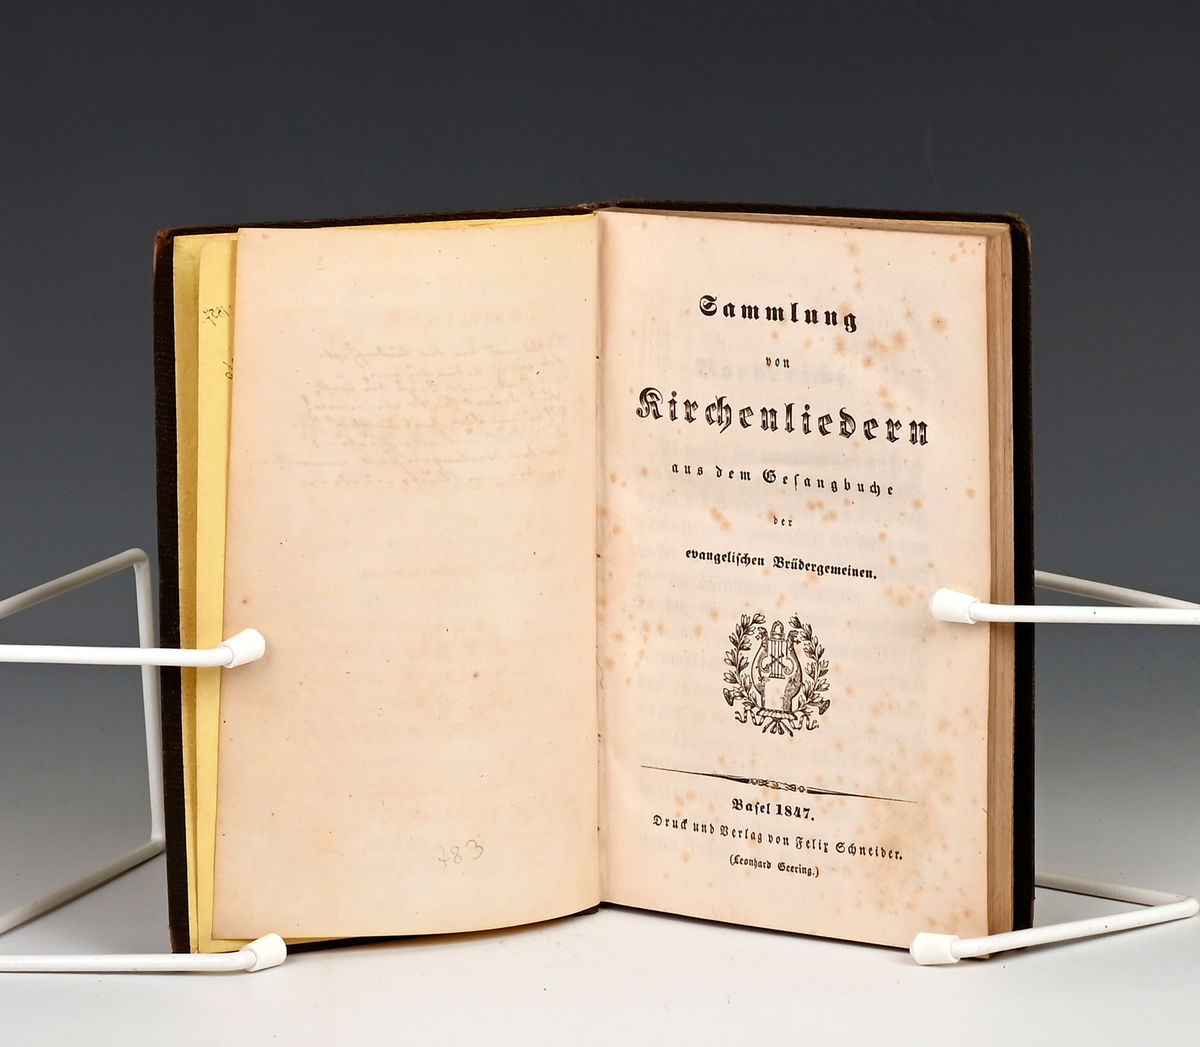 Sammlung von Kirchenliedern aus den Gesangbuche der evangelischen Brüdergemeinen. Basel 1847.